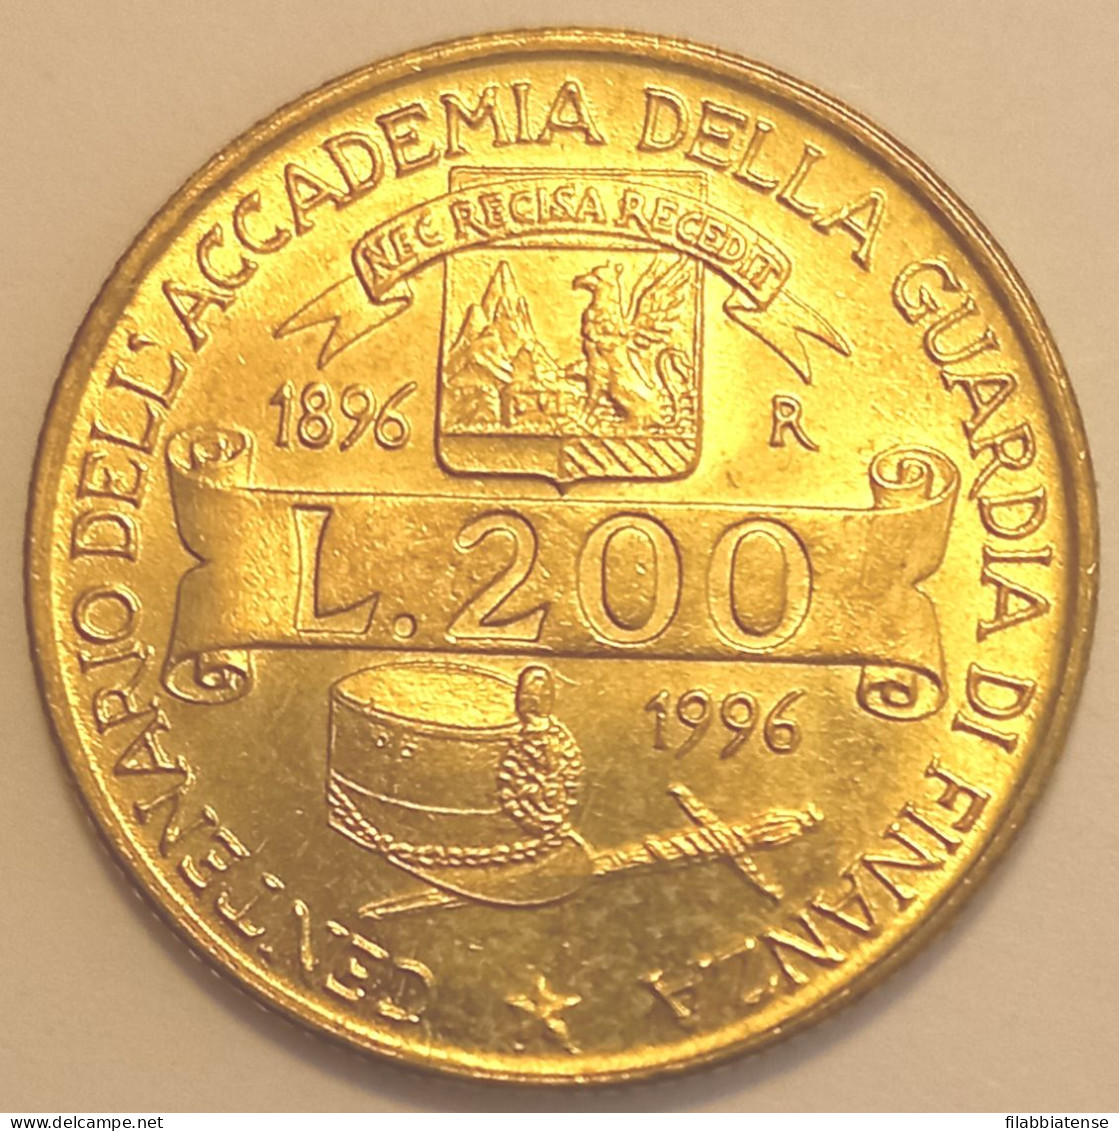 1996 - Italia 200 Lire Guardia Di Finanza    ------- - 200 Lire